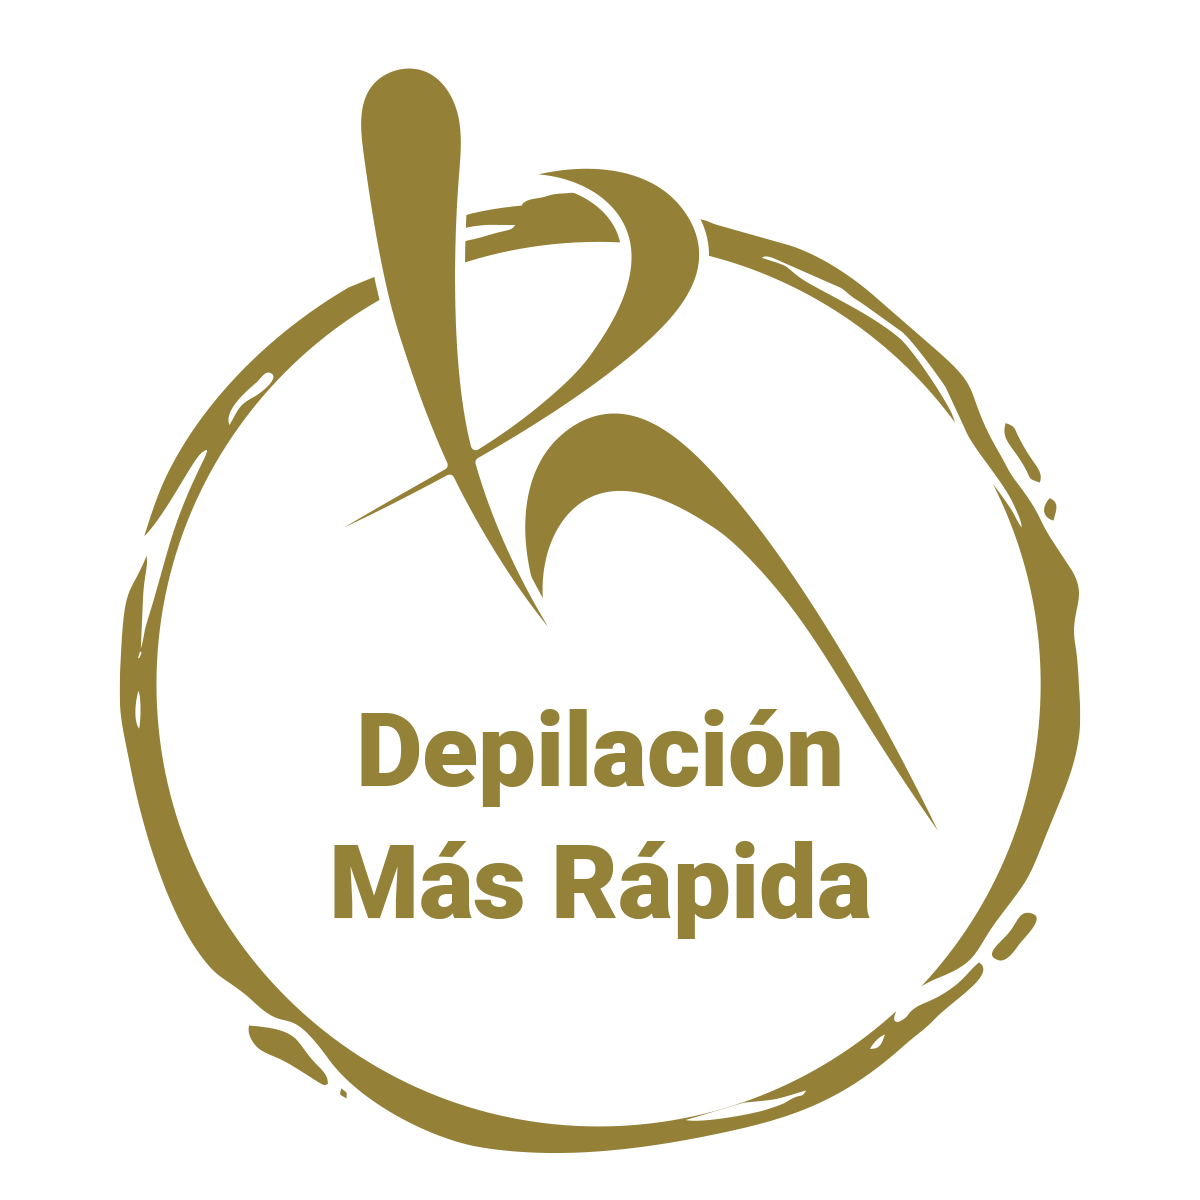 Centros de Depilación Láser SHR Reme Aguilar en Murcia y Molina de Segura - Servicios Mujer